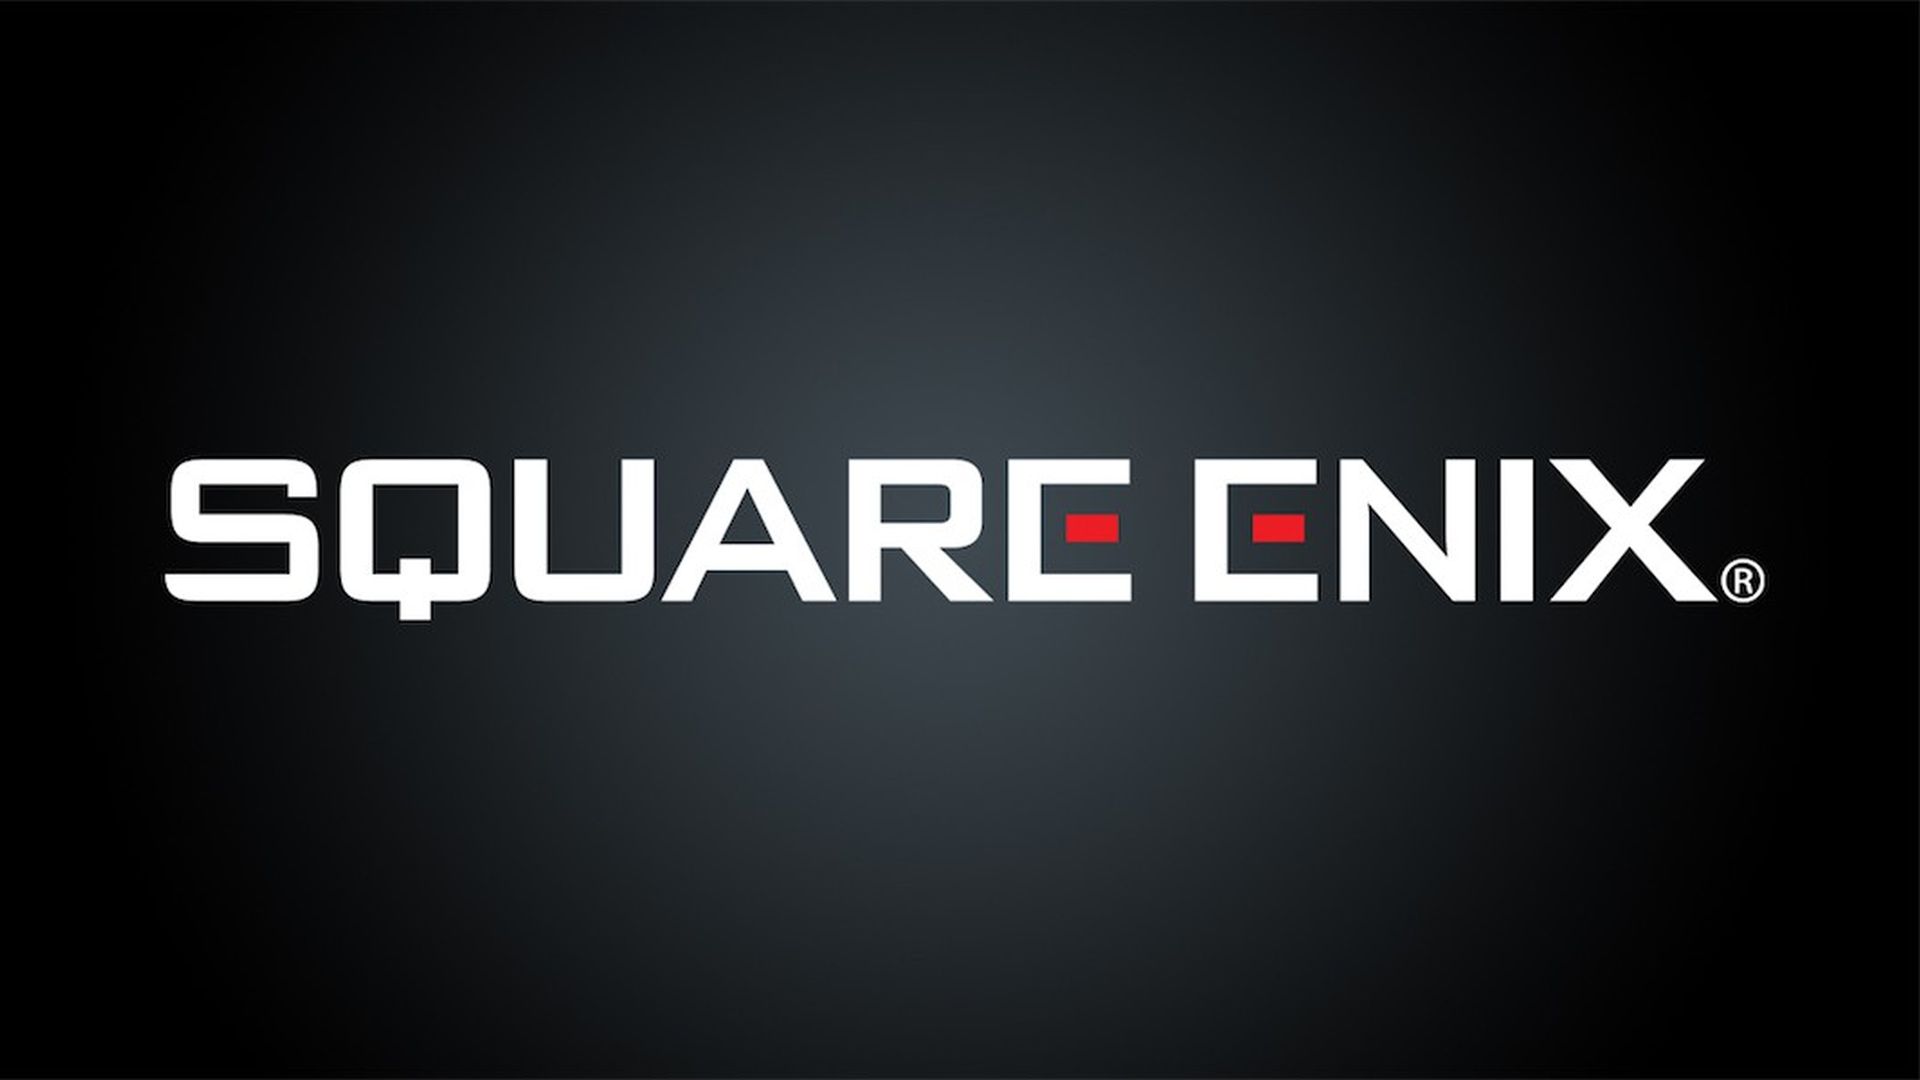 شایعه: شرکت Square Enix به دنبال فروش سهام استودیوهای خود است